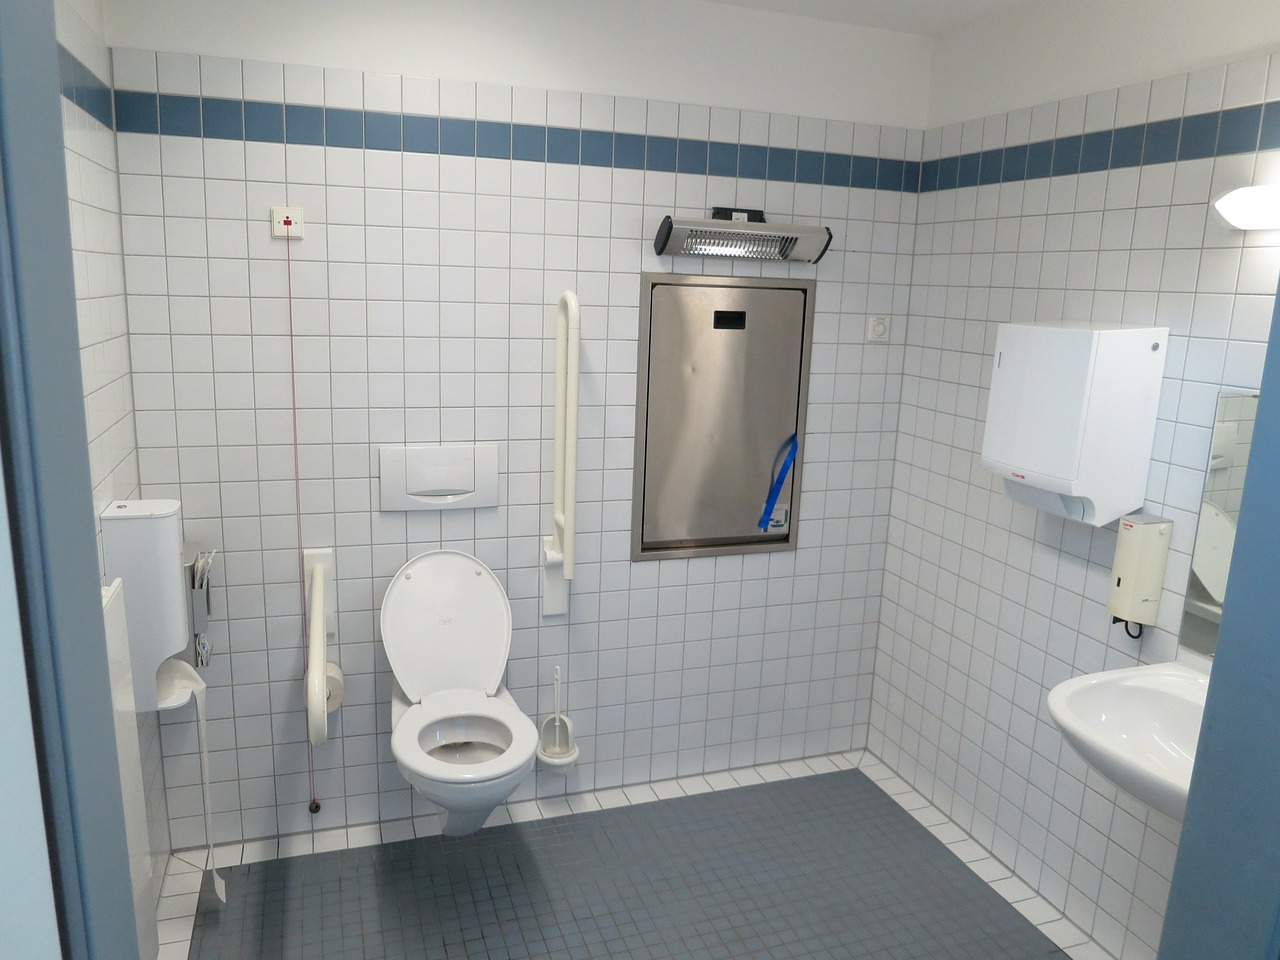 Aménager une salle de bains pour personne handicapée : mode d’emploi